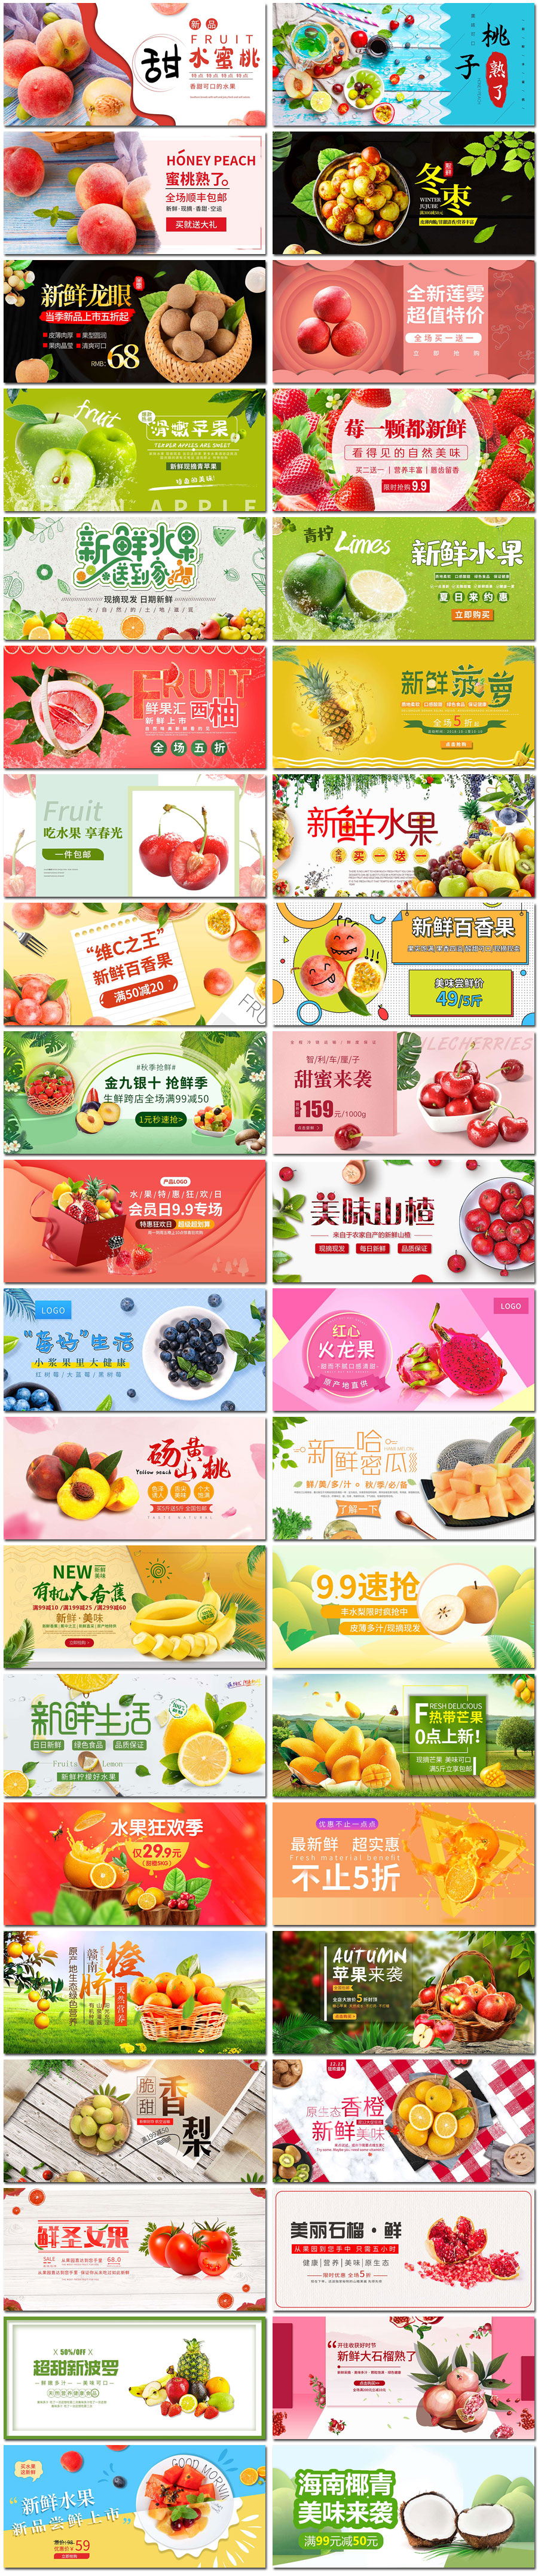 水果节水果店淘宝电商活动网页海报banner横幅psd模板设计素材